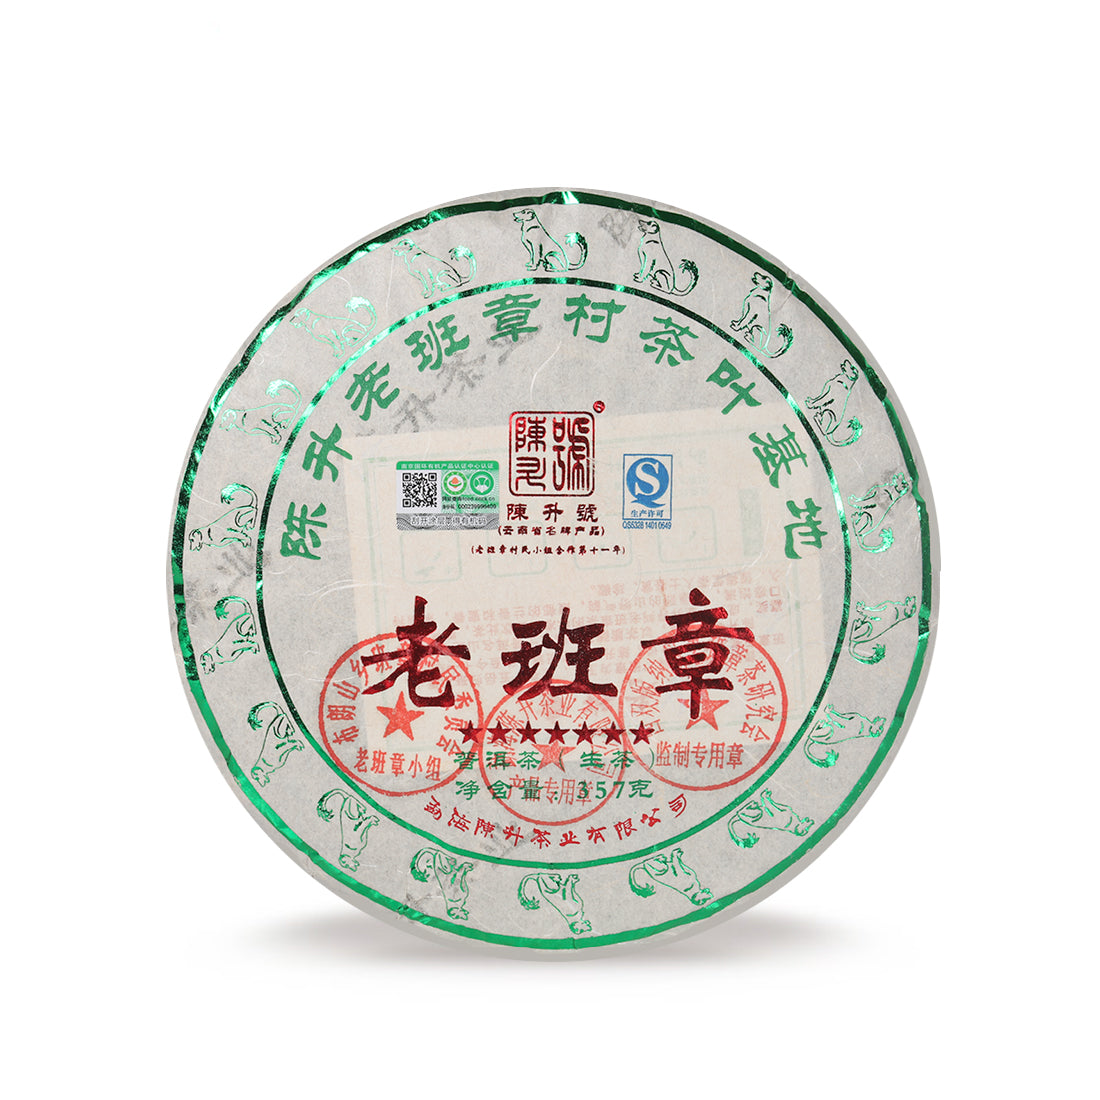 
                  
                    Chen Sheng Hao 2018 Lao Ban Zhang Raw Pu'er Tea Cake
                  
                